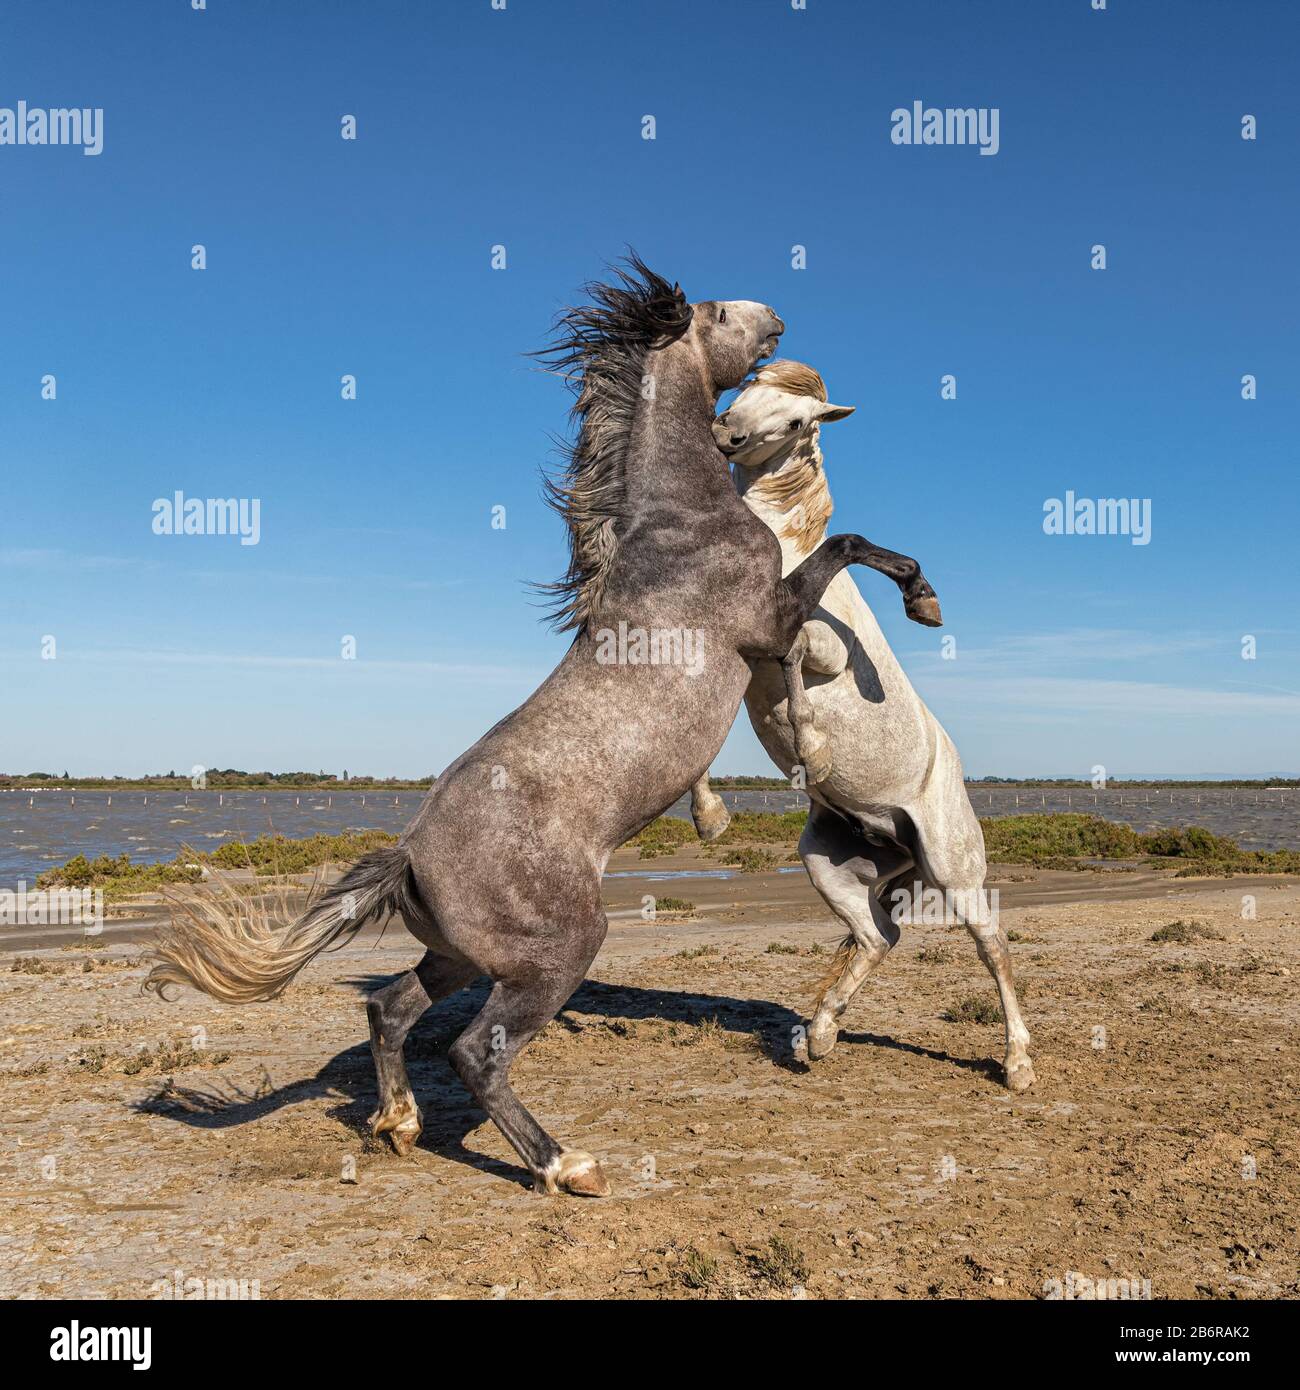 Chevaux Camargue (Equus caballus) etalons, combats dans l'eau près de Saintes Maries-de-la-Mer, Camargue, France, Europe Banque D'Images